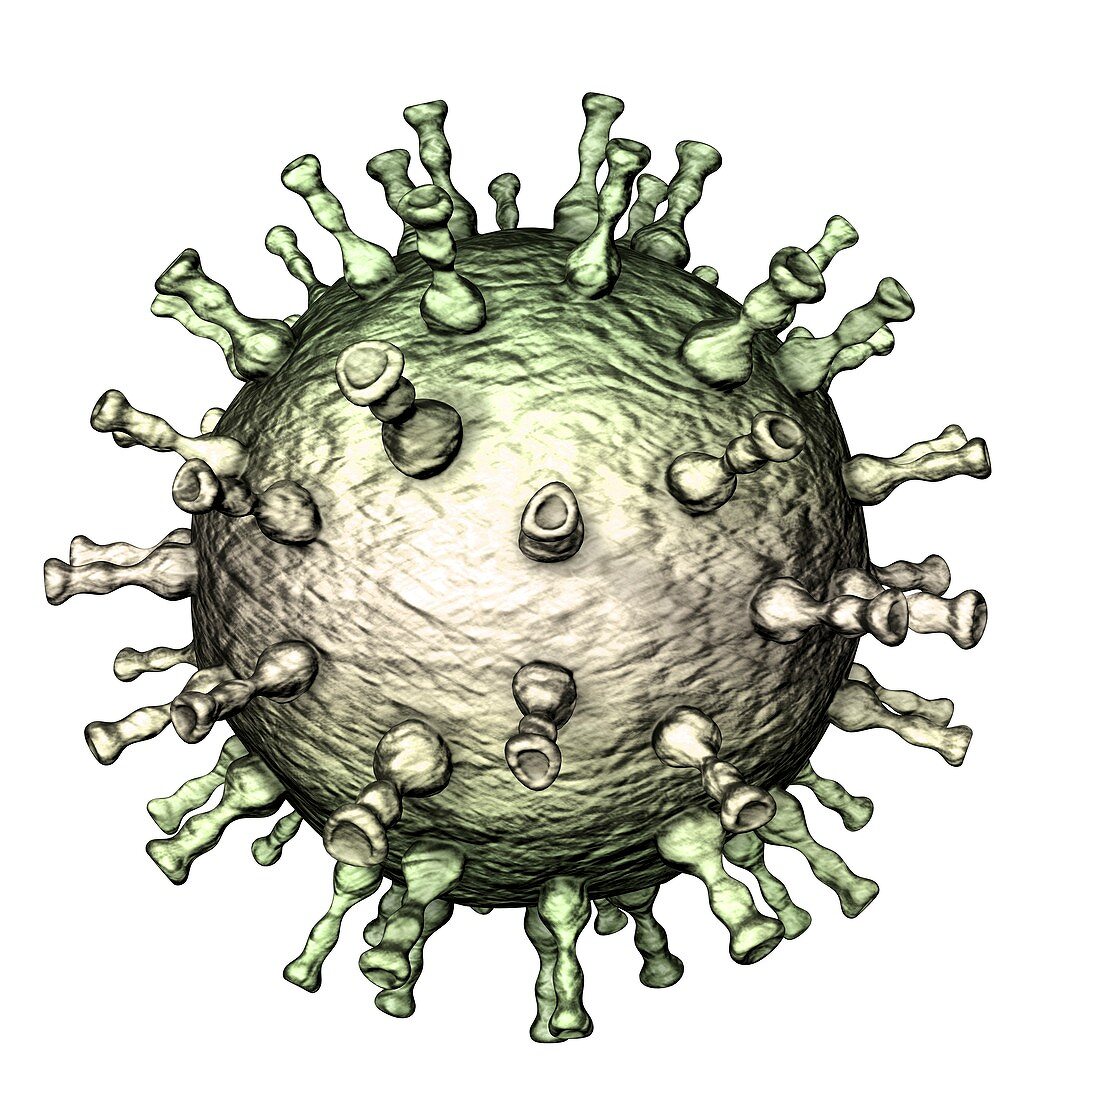 Chickenpox virus structure, illustration